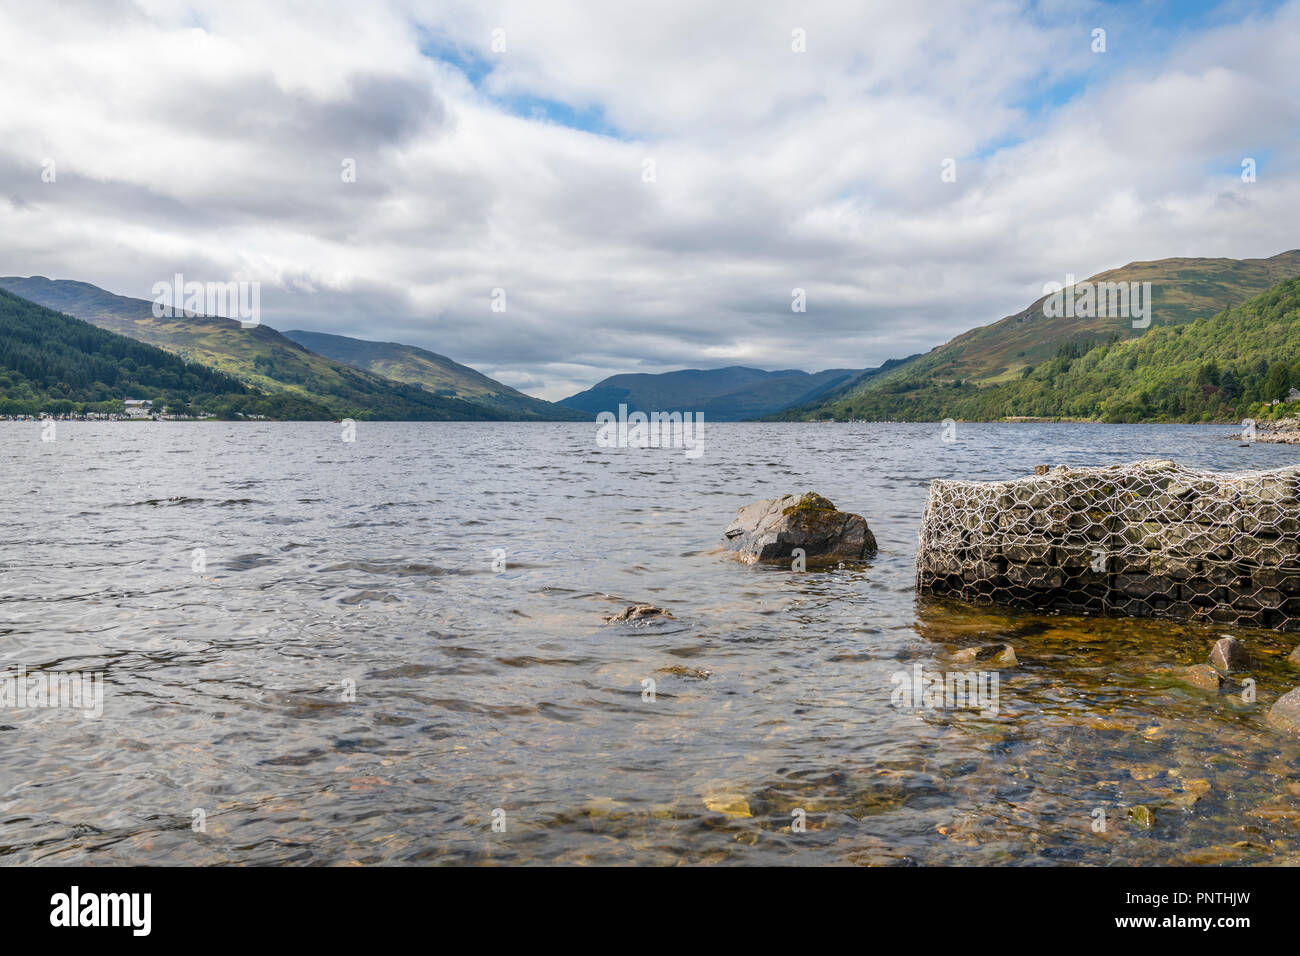 Loch Earn, Scotland Stock Photo